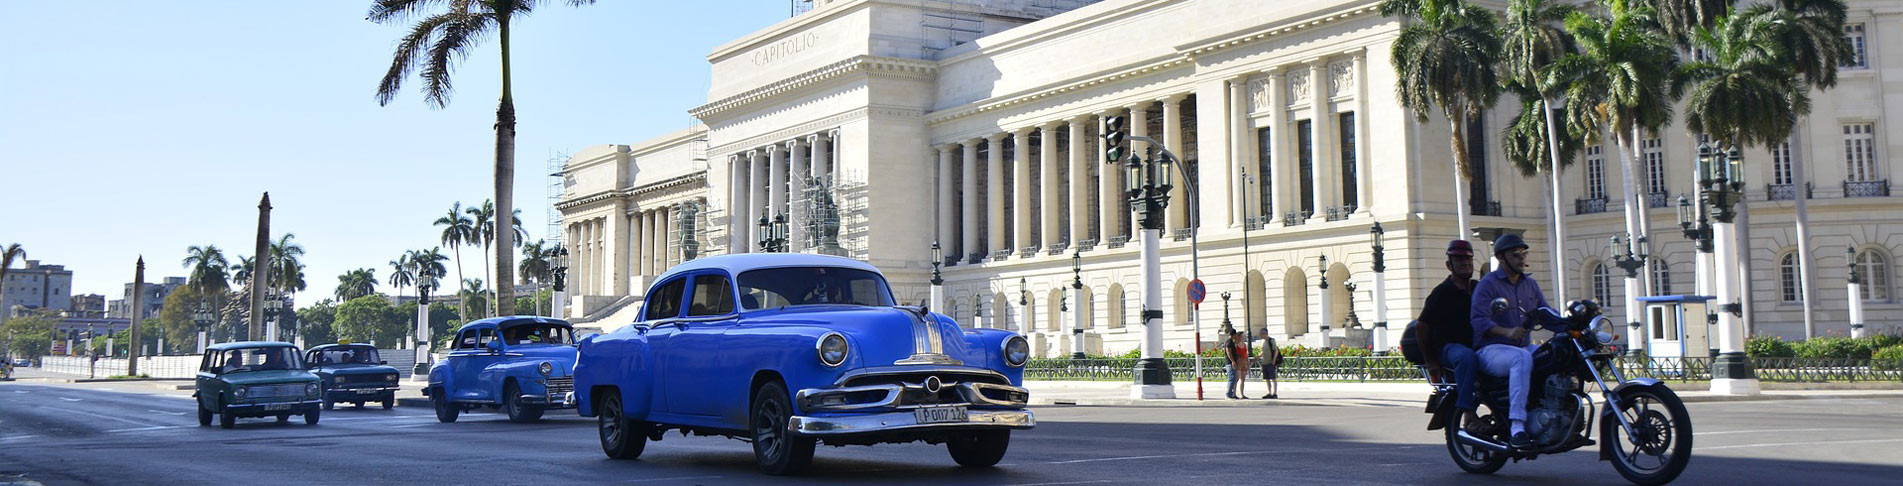 Havanna bei einer All Inclusive Kuba Reise entdecken